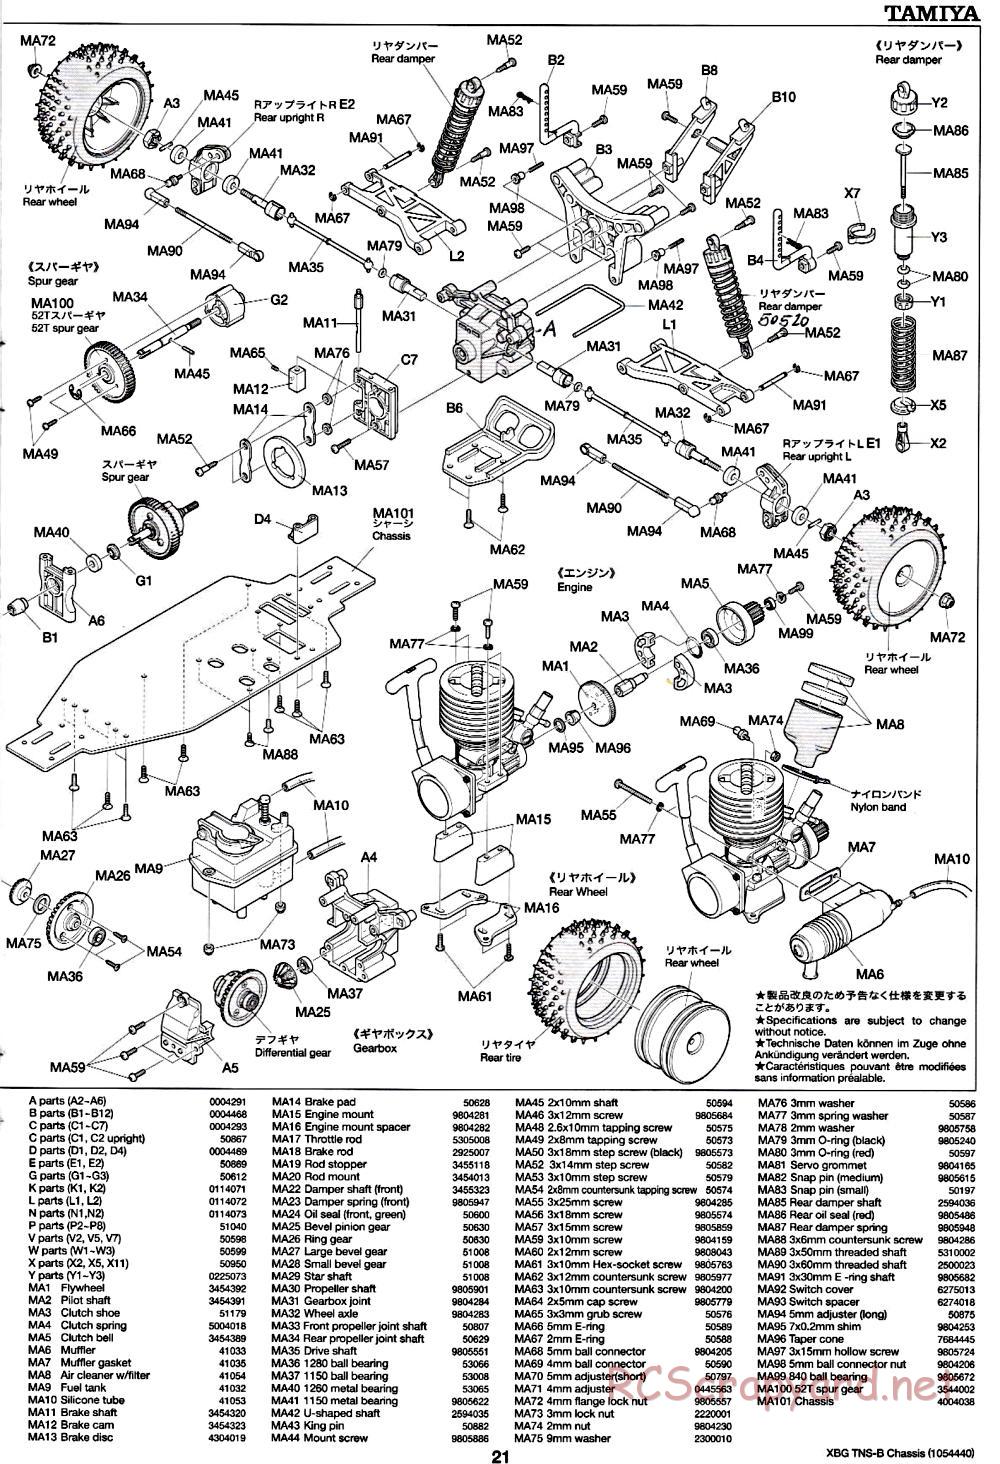 Tamiya - TNS-B Chassis - Manual - Page 21